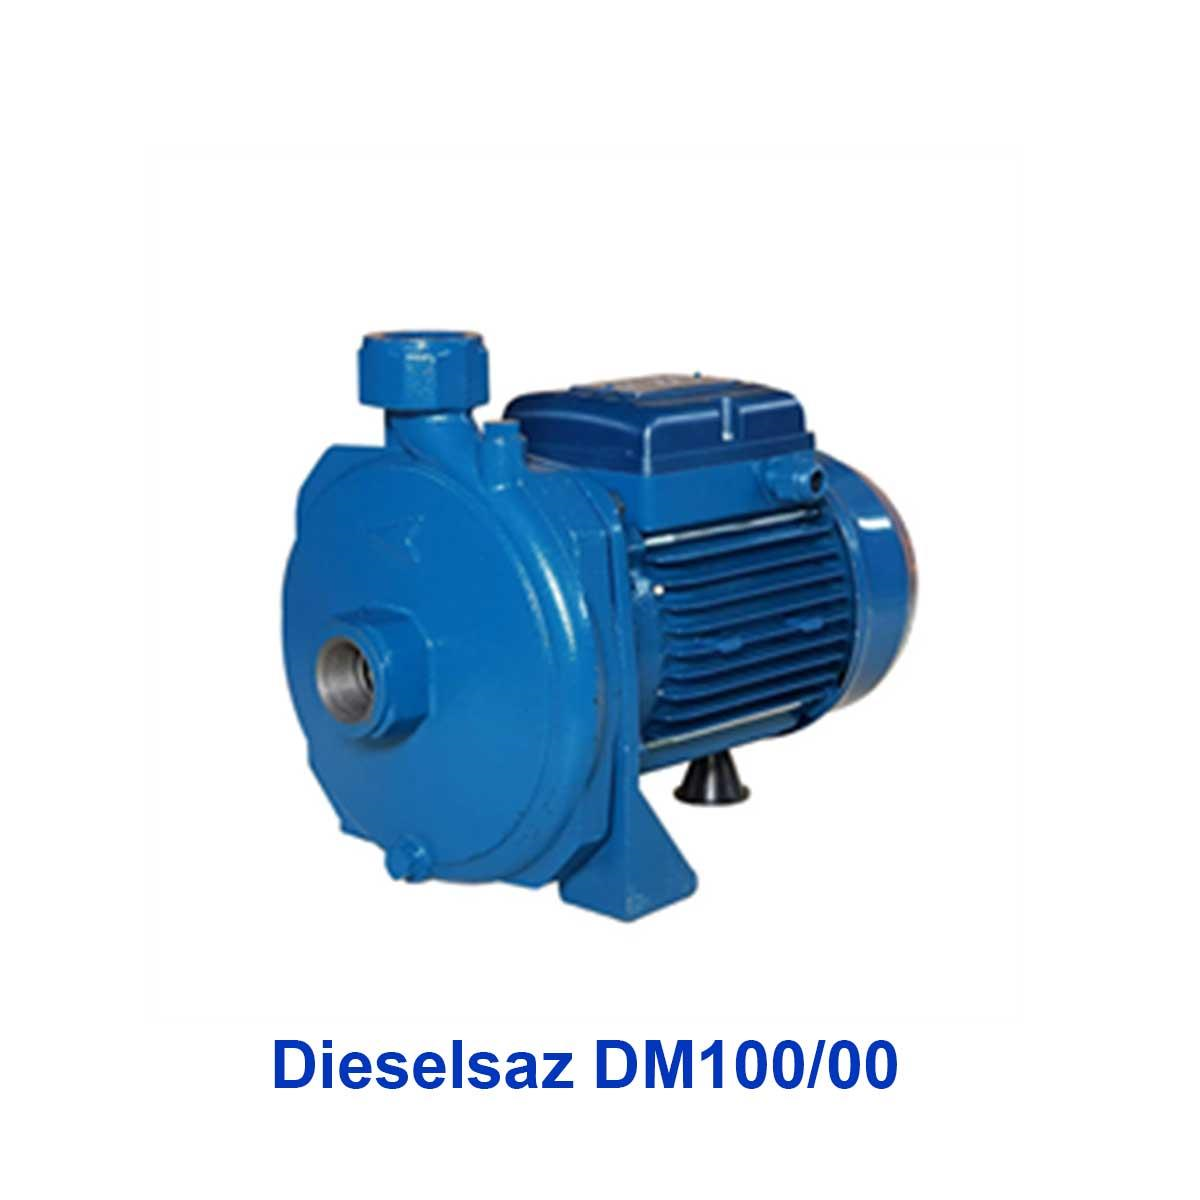 پمپ آب بشقابی دیزل ساز مدل Dieselsaz DM100/00